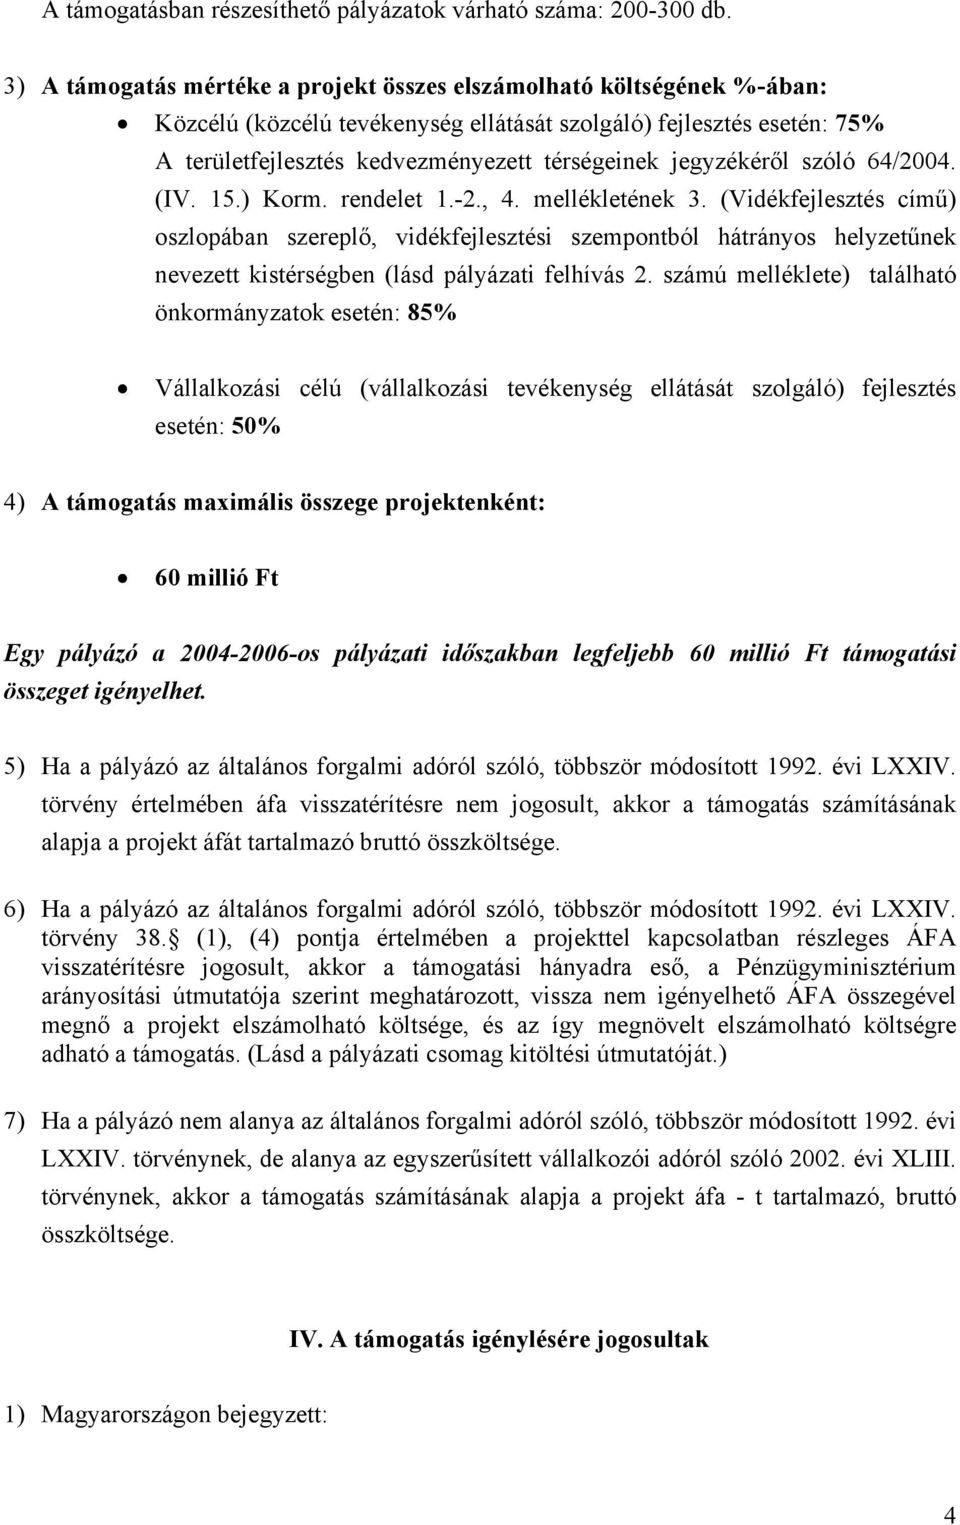 jegyzékéről szóló 64/2004. (IV. 15.) Korm. rendelet 1.-2., 4. mellékletének 3.